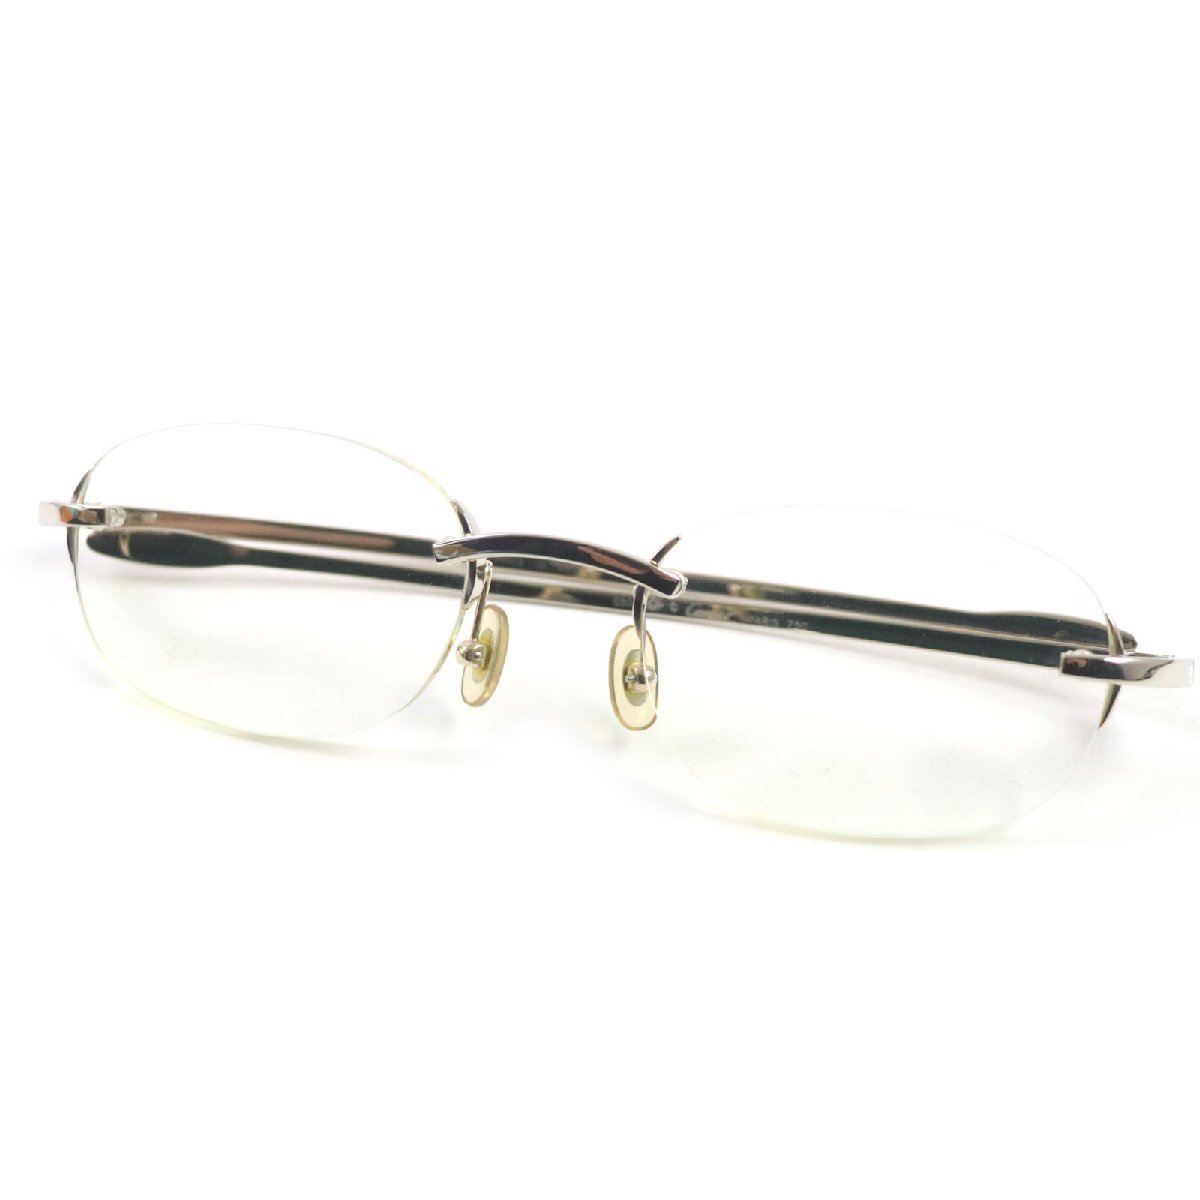 美品▼Cartier カルティエ 750(18K) 2Pダイヤモンド ツーポイント メガネ 眼鏡 アイウェア シルバー ケース付き 仏製 総重量35.4g メンズ_画像1